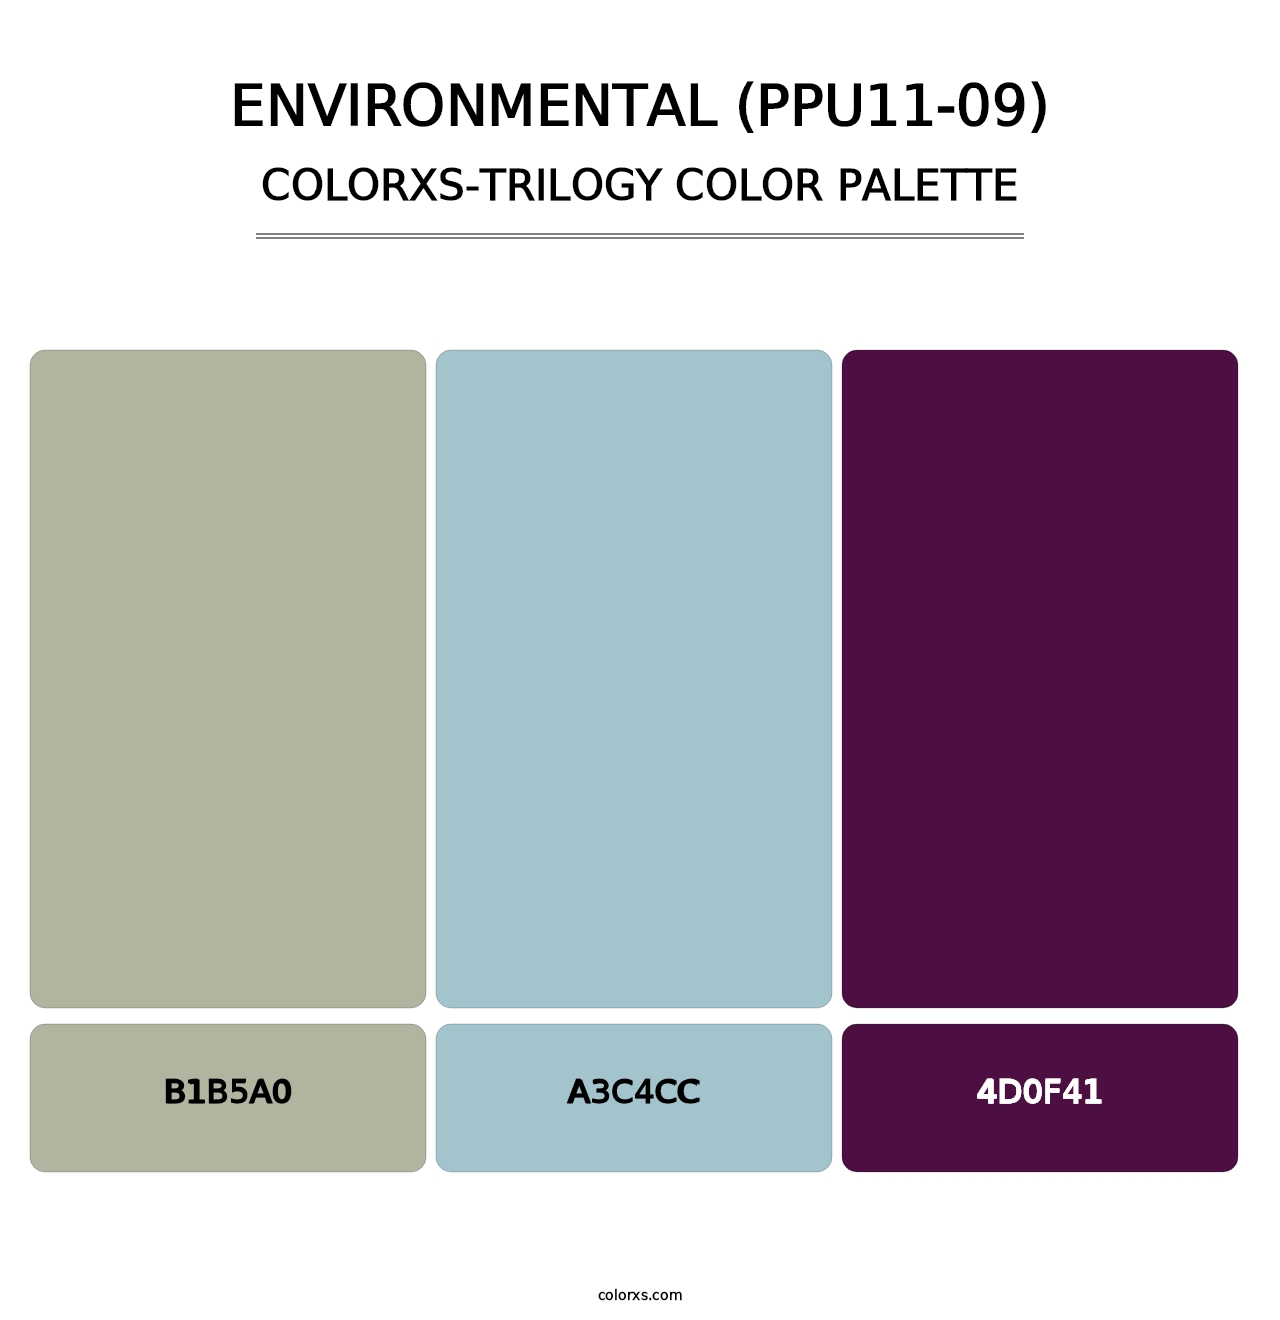 Environmental (PPU11-09) - Colorxs Trilogy Palette